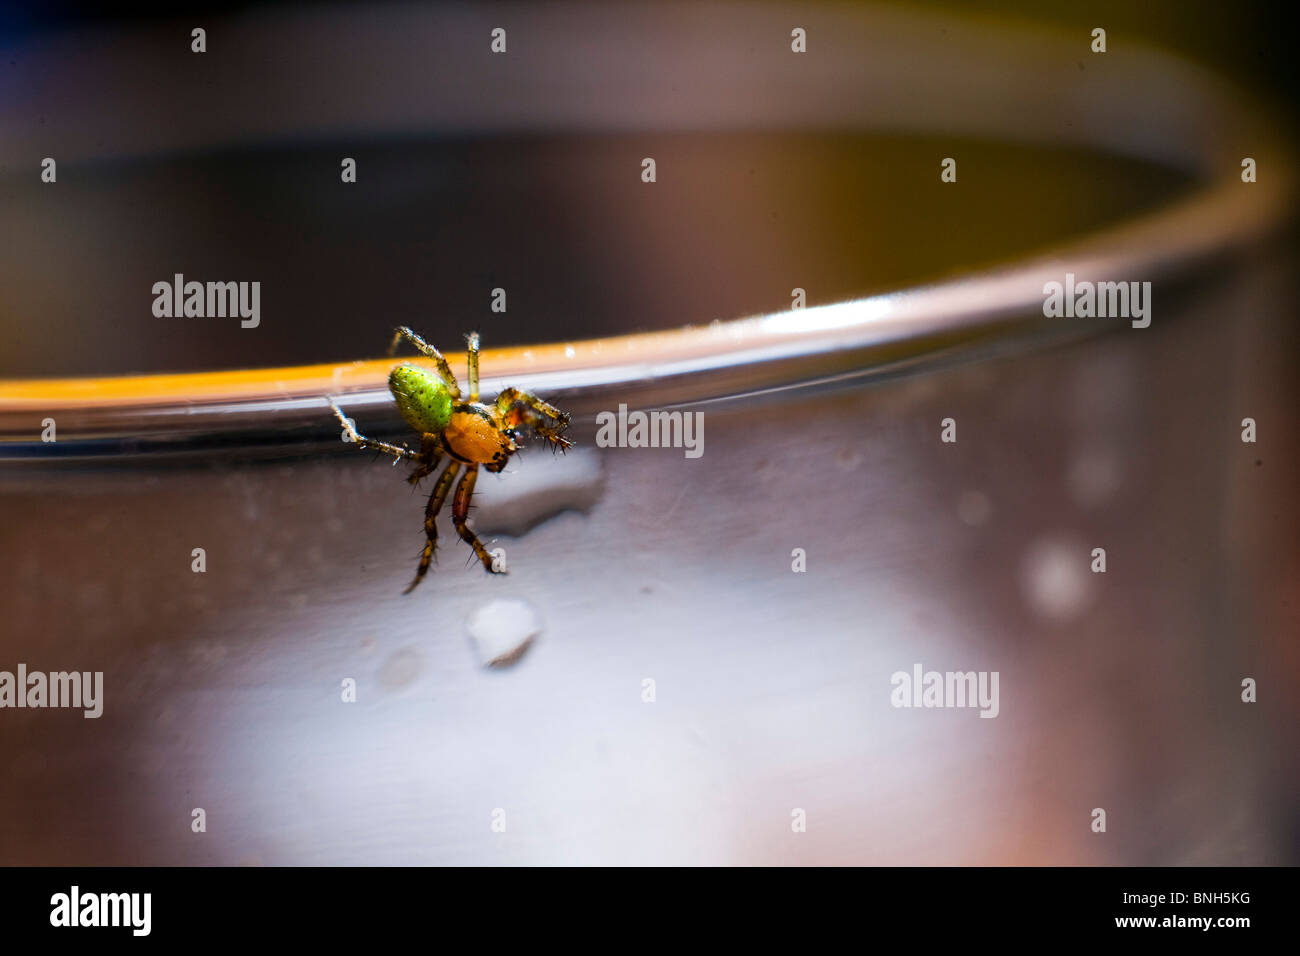 Araignée sur le bord de la glace. Araniella cucurbitina araignée concombre, Banque D'Images